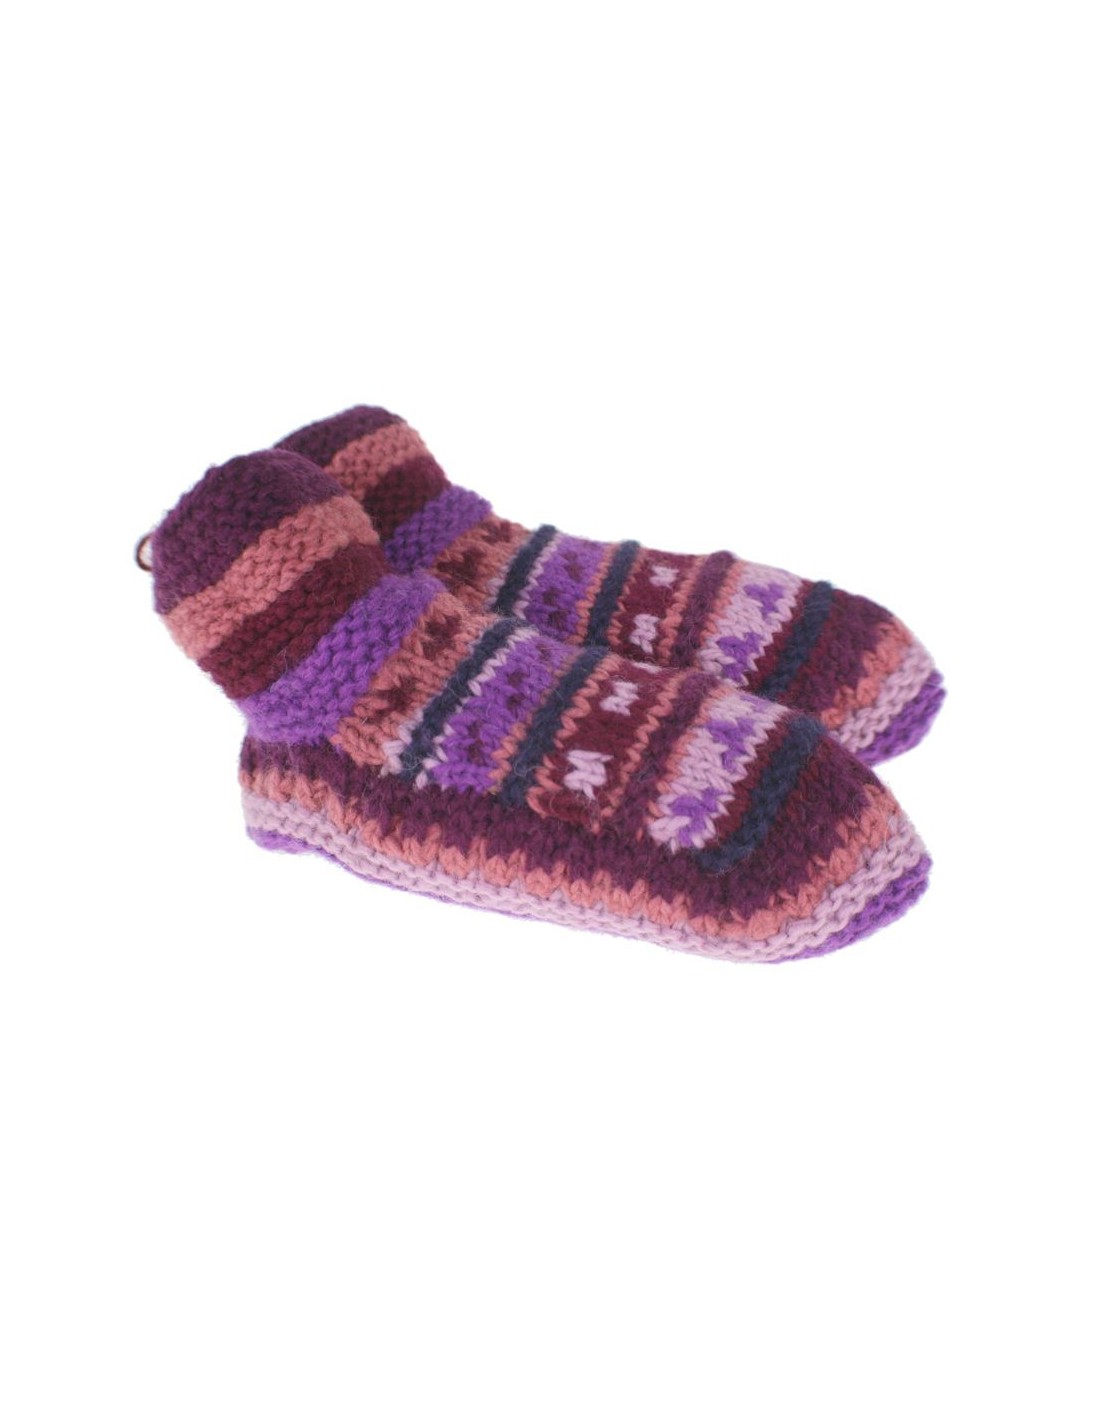 Patucos de lana artesanal para adulto unisex color lila para dormir calientes suave y cómodo para regalo.